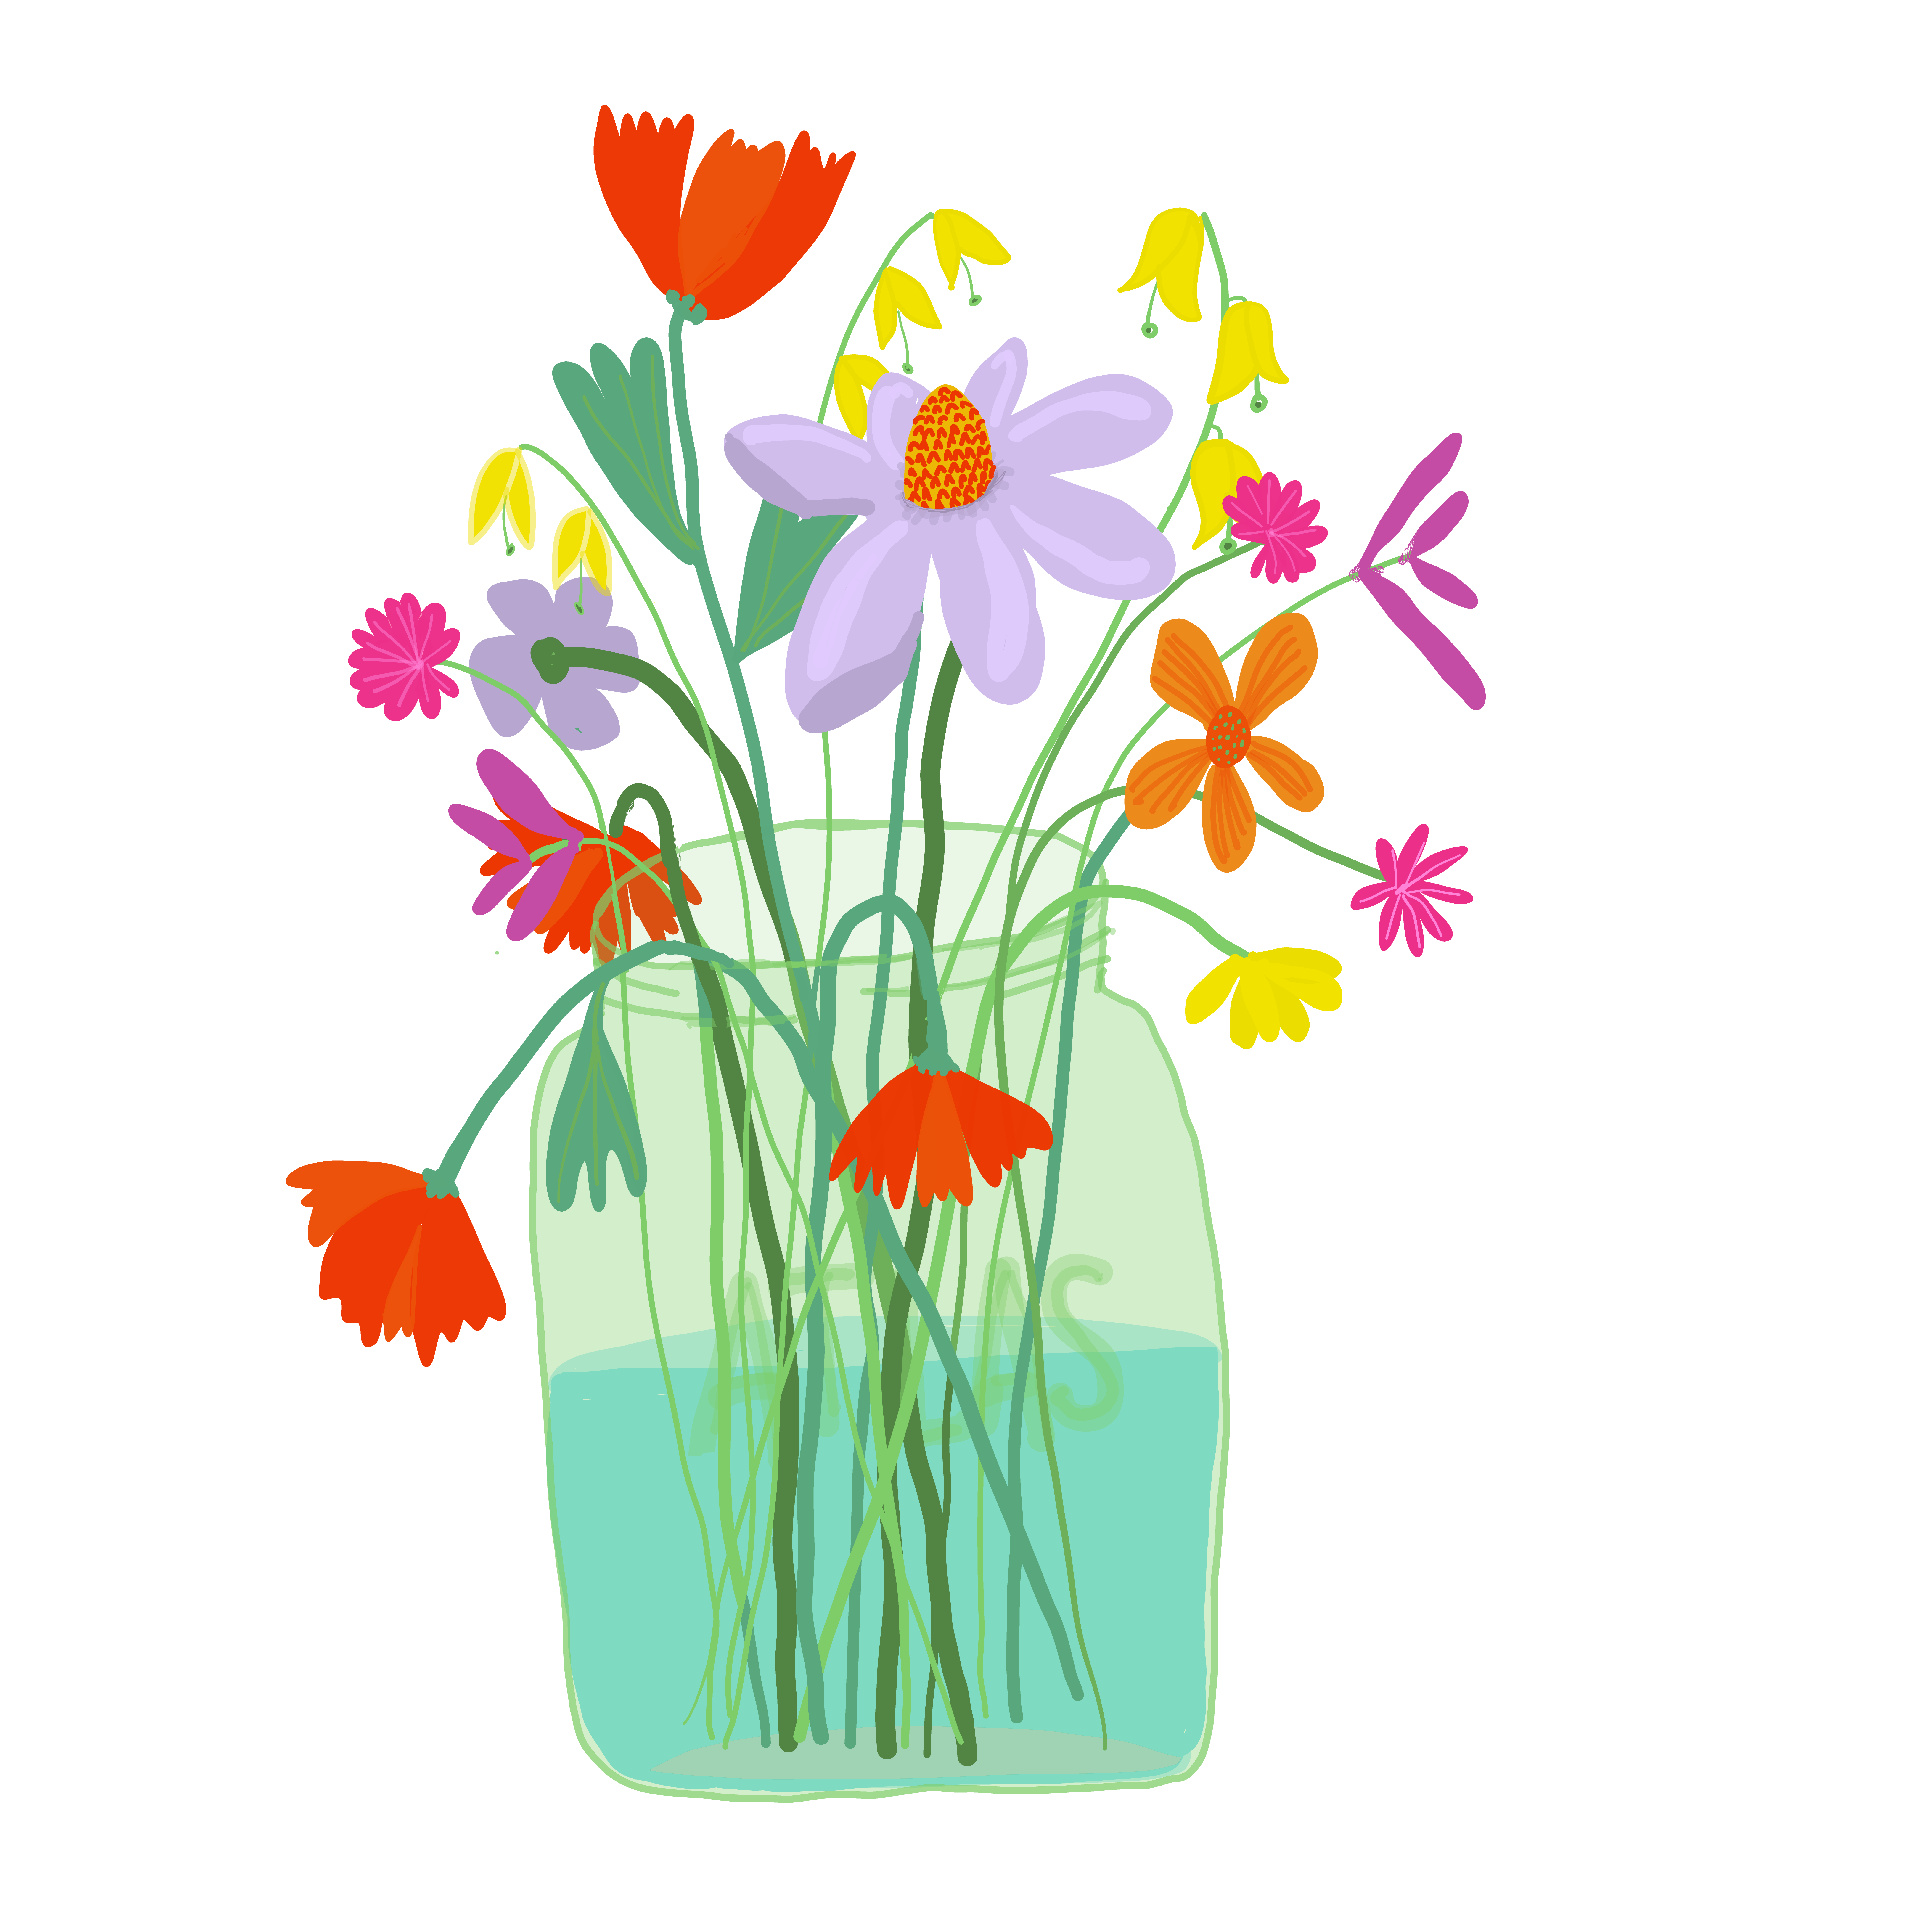 Atlas Jar with Flowers